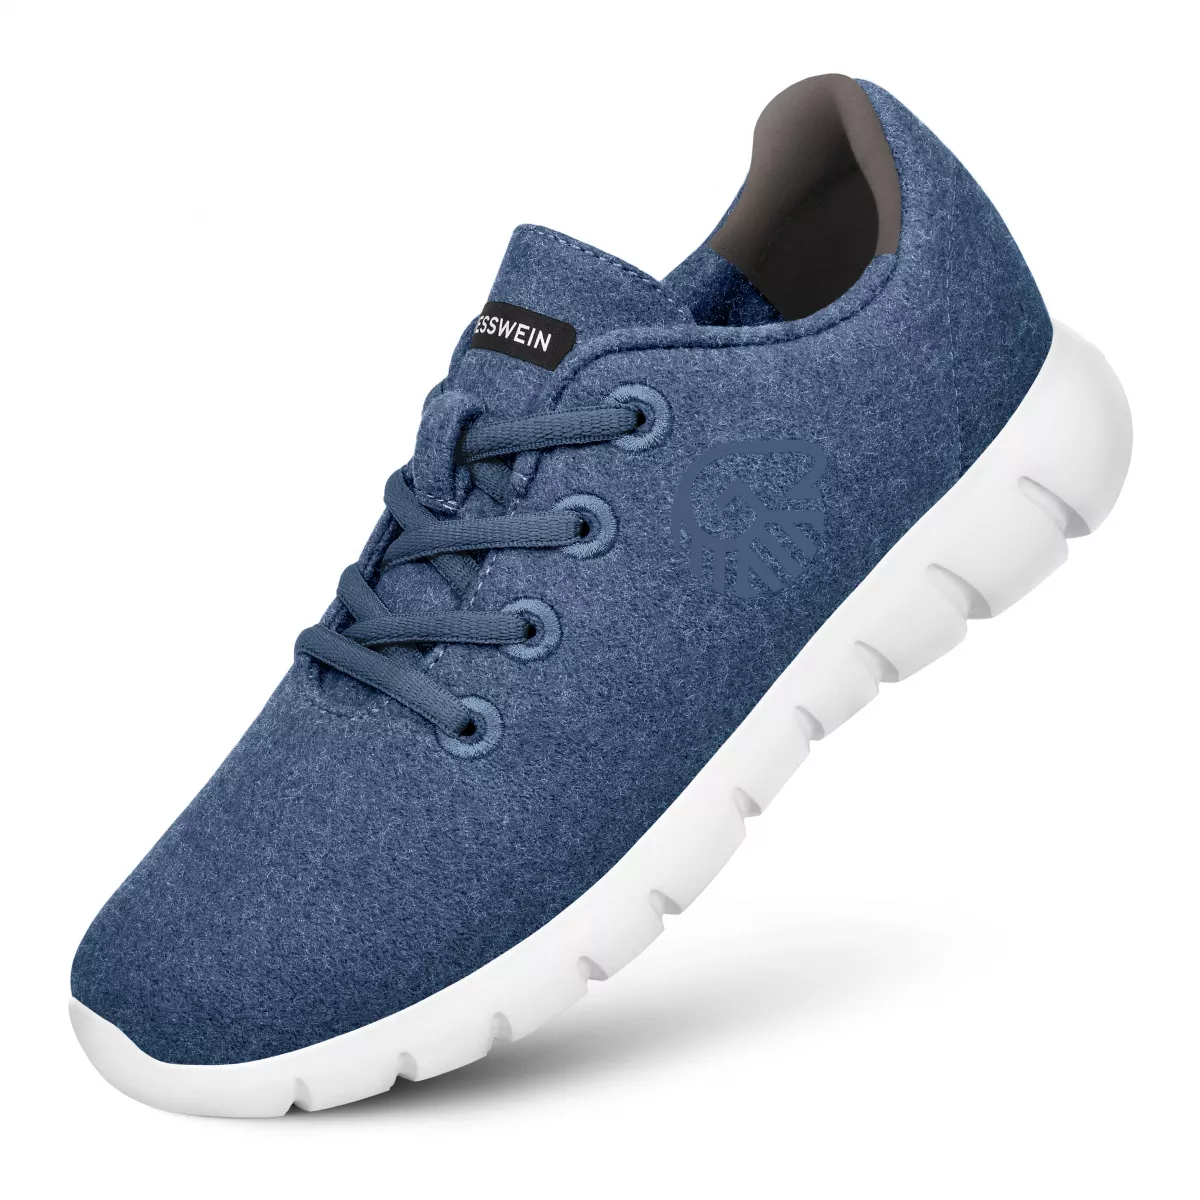 Pantofi barbati Merino Runners albastru jeans 45